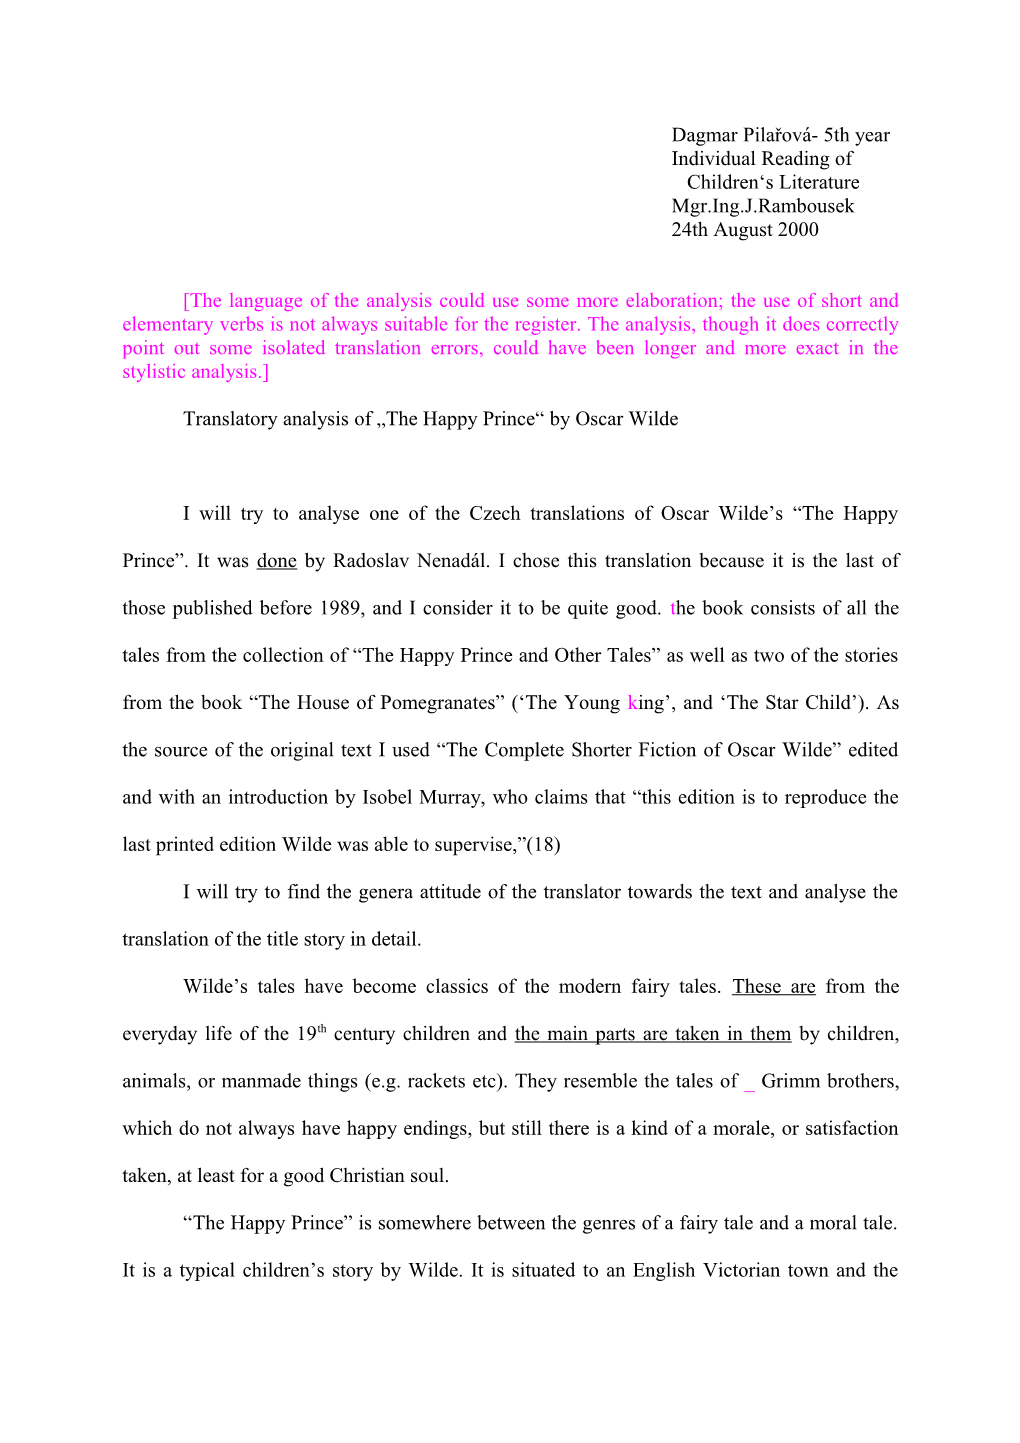 Translatory Analysis of the Happy Prince by Oscar Wilde